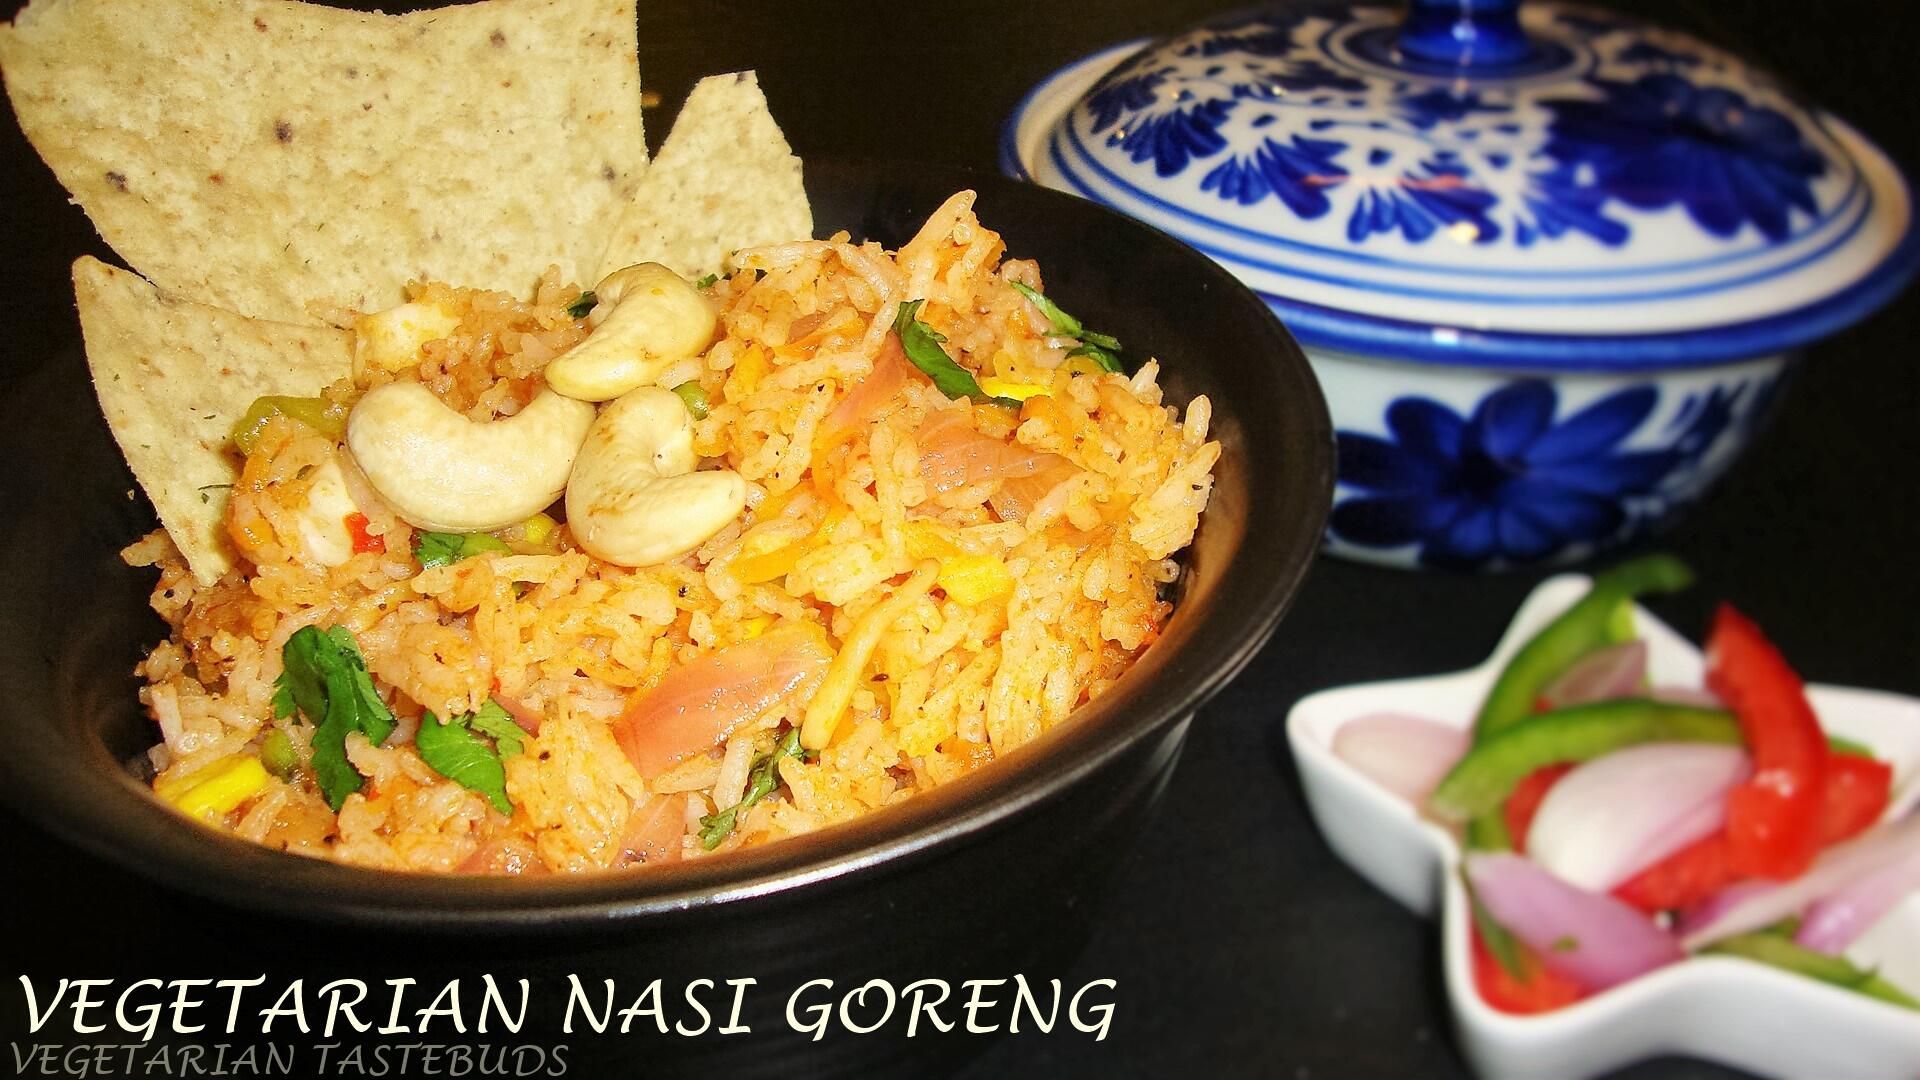 Vegetarian Nasi Goreng Recipe | How to make authentic Vegetarian Nasi